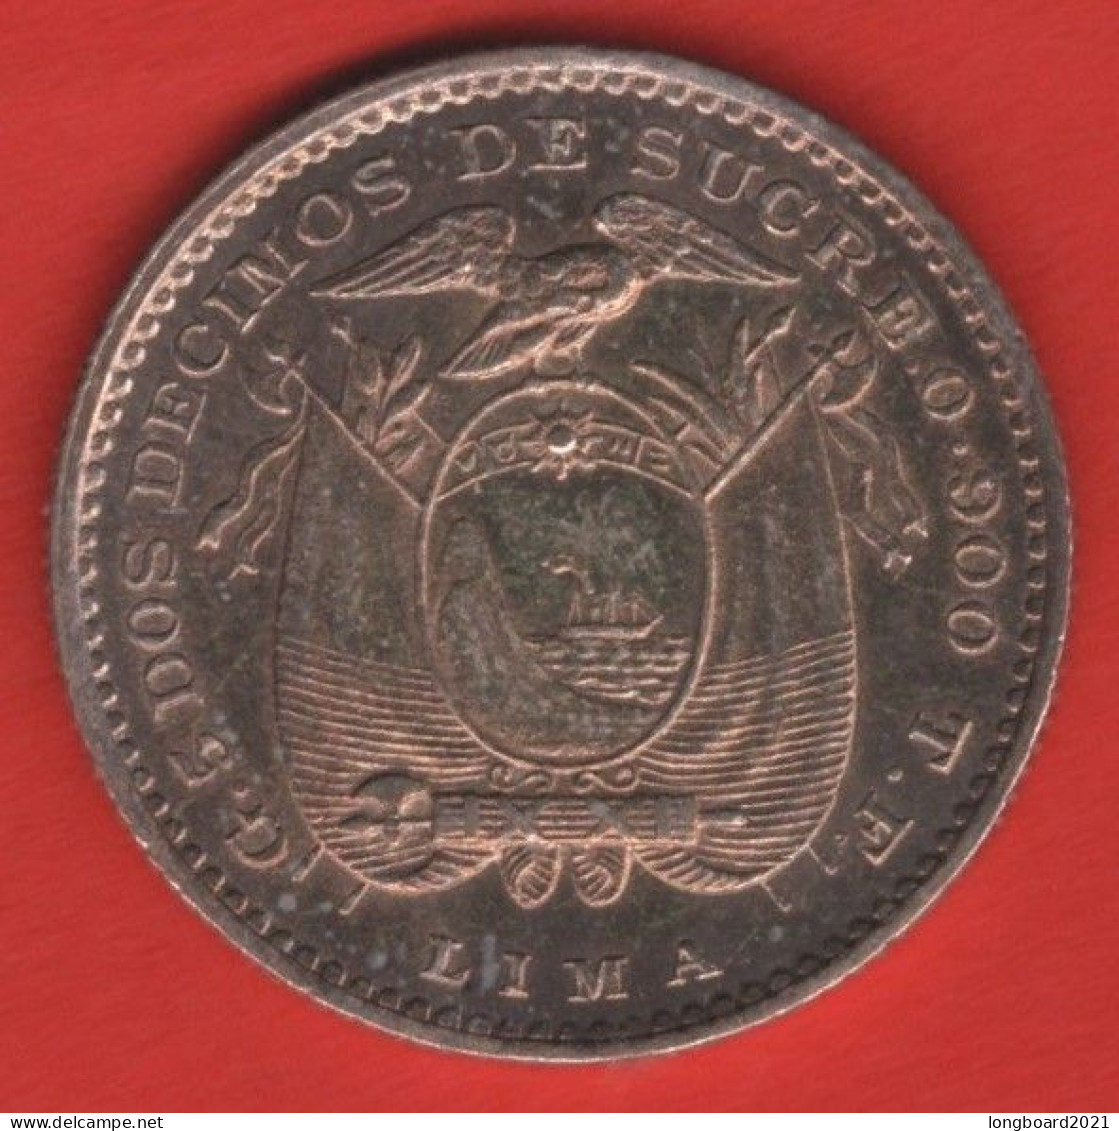 ECUADOR - 1 DECIMO 1894 -SILVER- - Ecuador